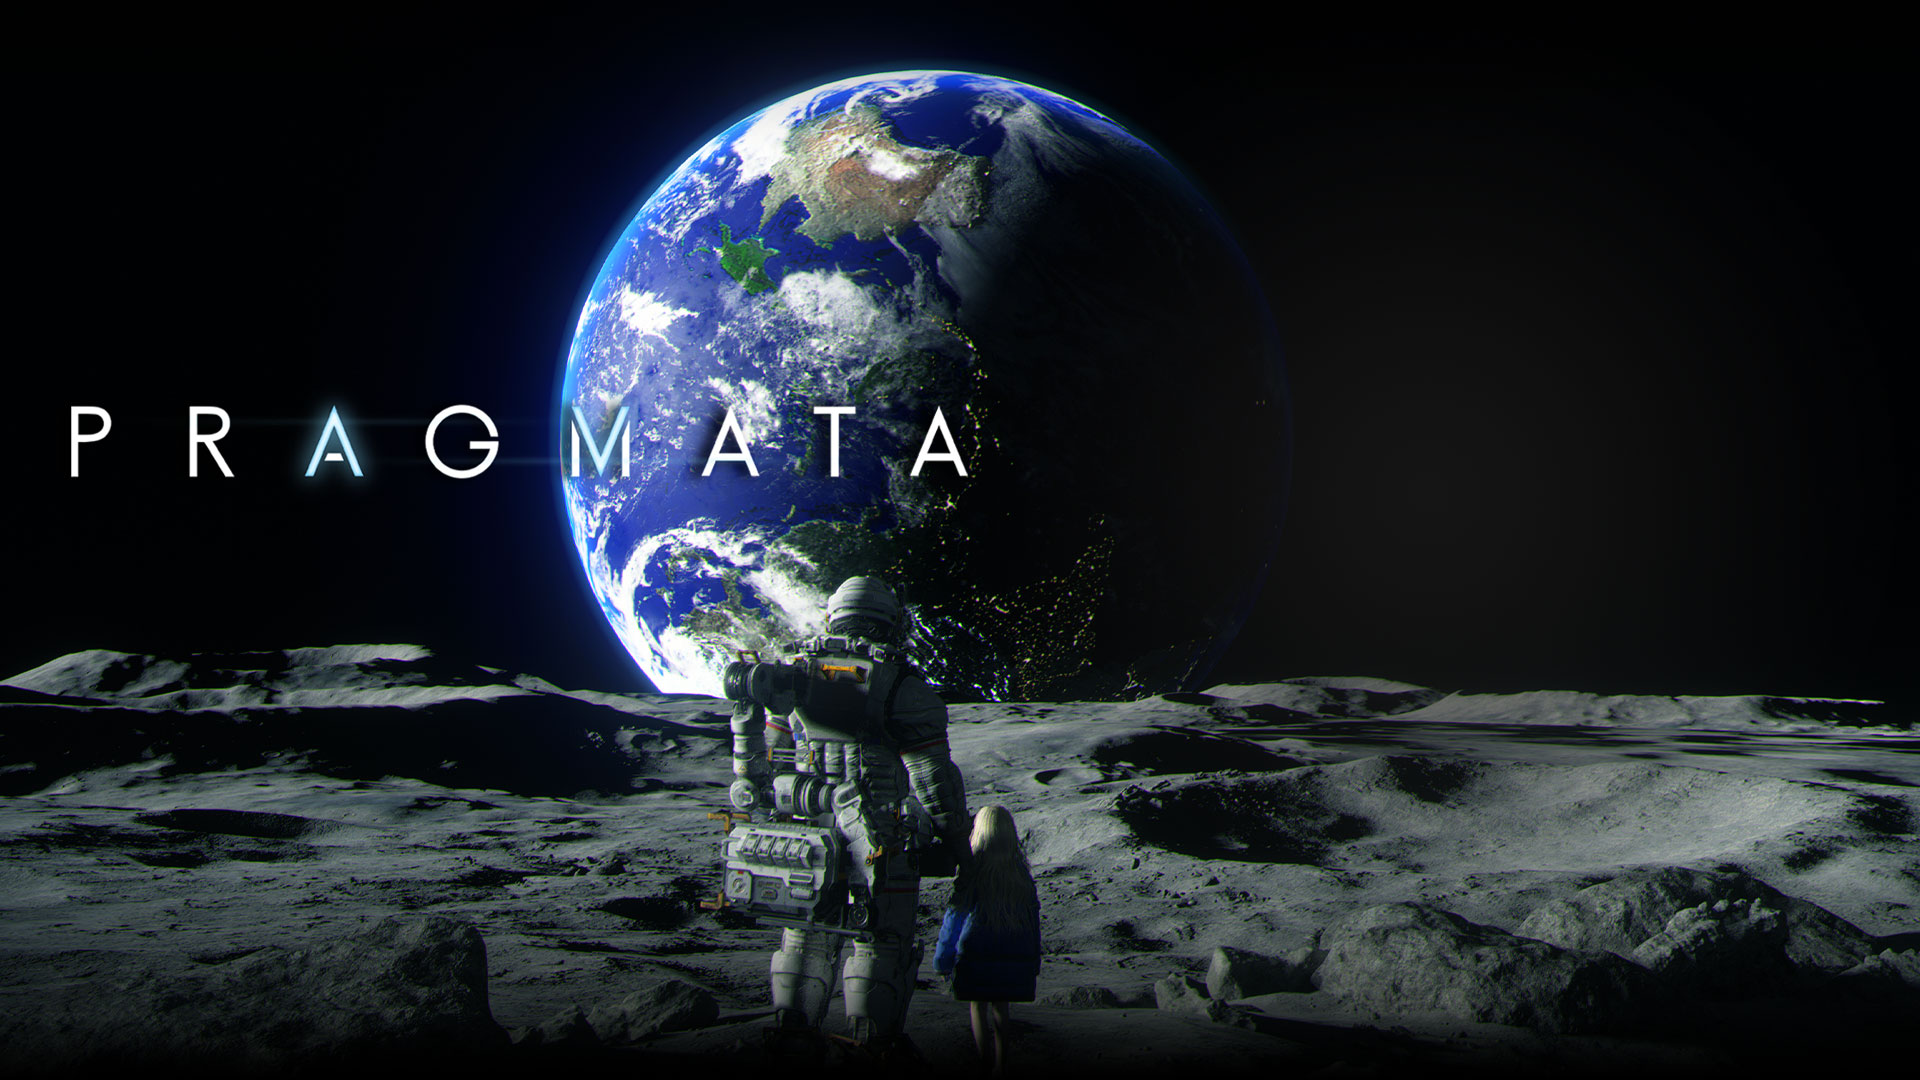 Pragmata: Ein Astronaut und ein junges Mädchen schauen die Erde an, während sie zusammen auf dem Mond stehen